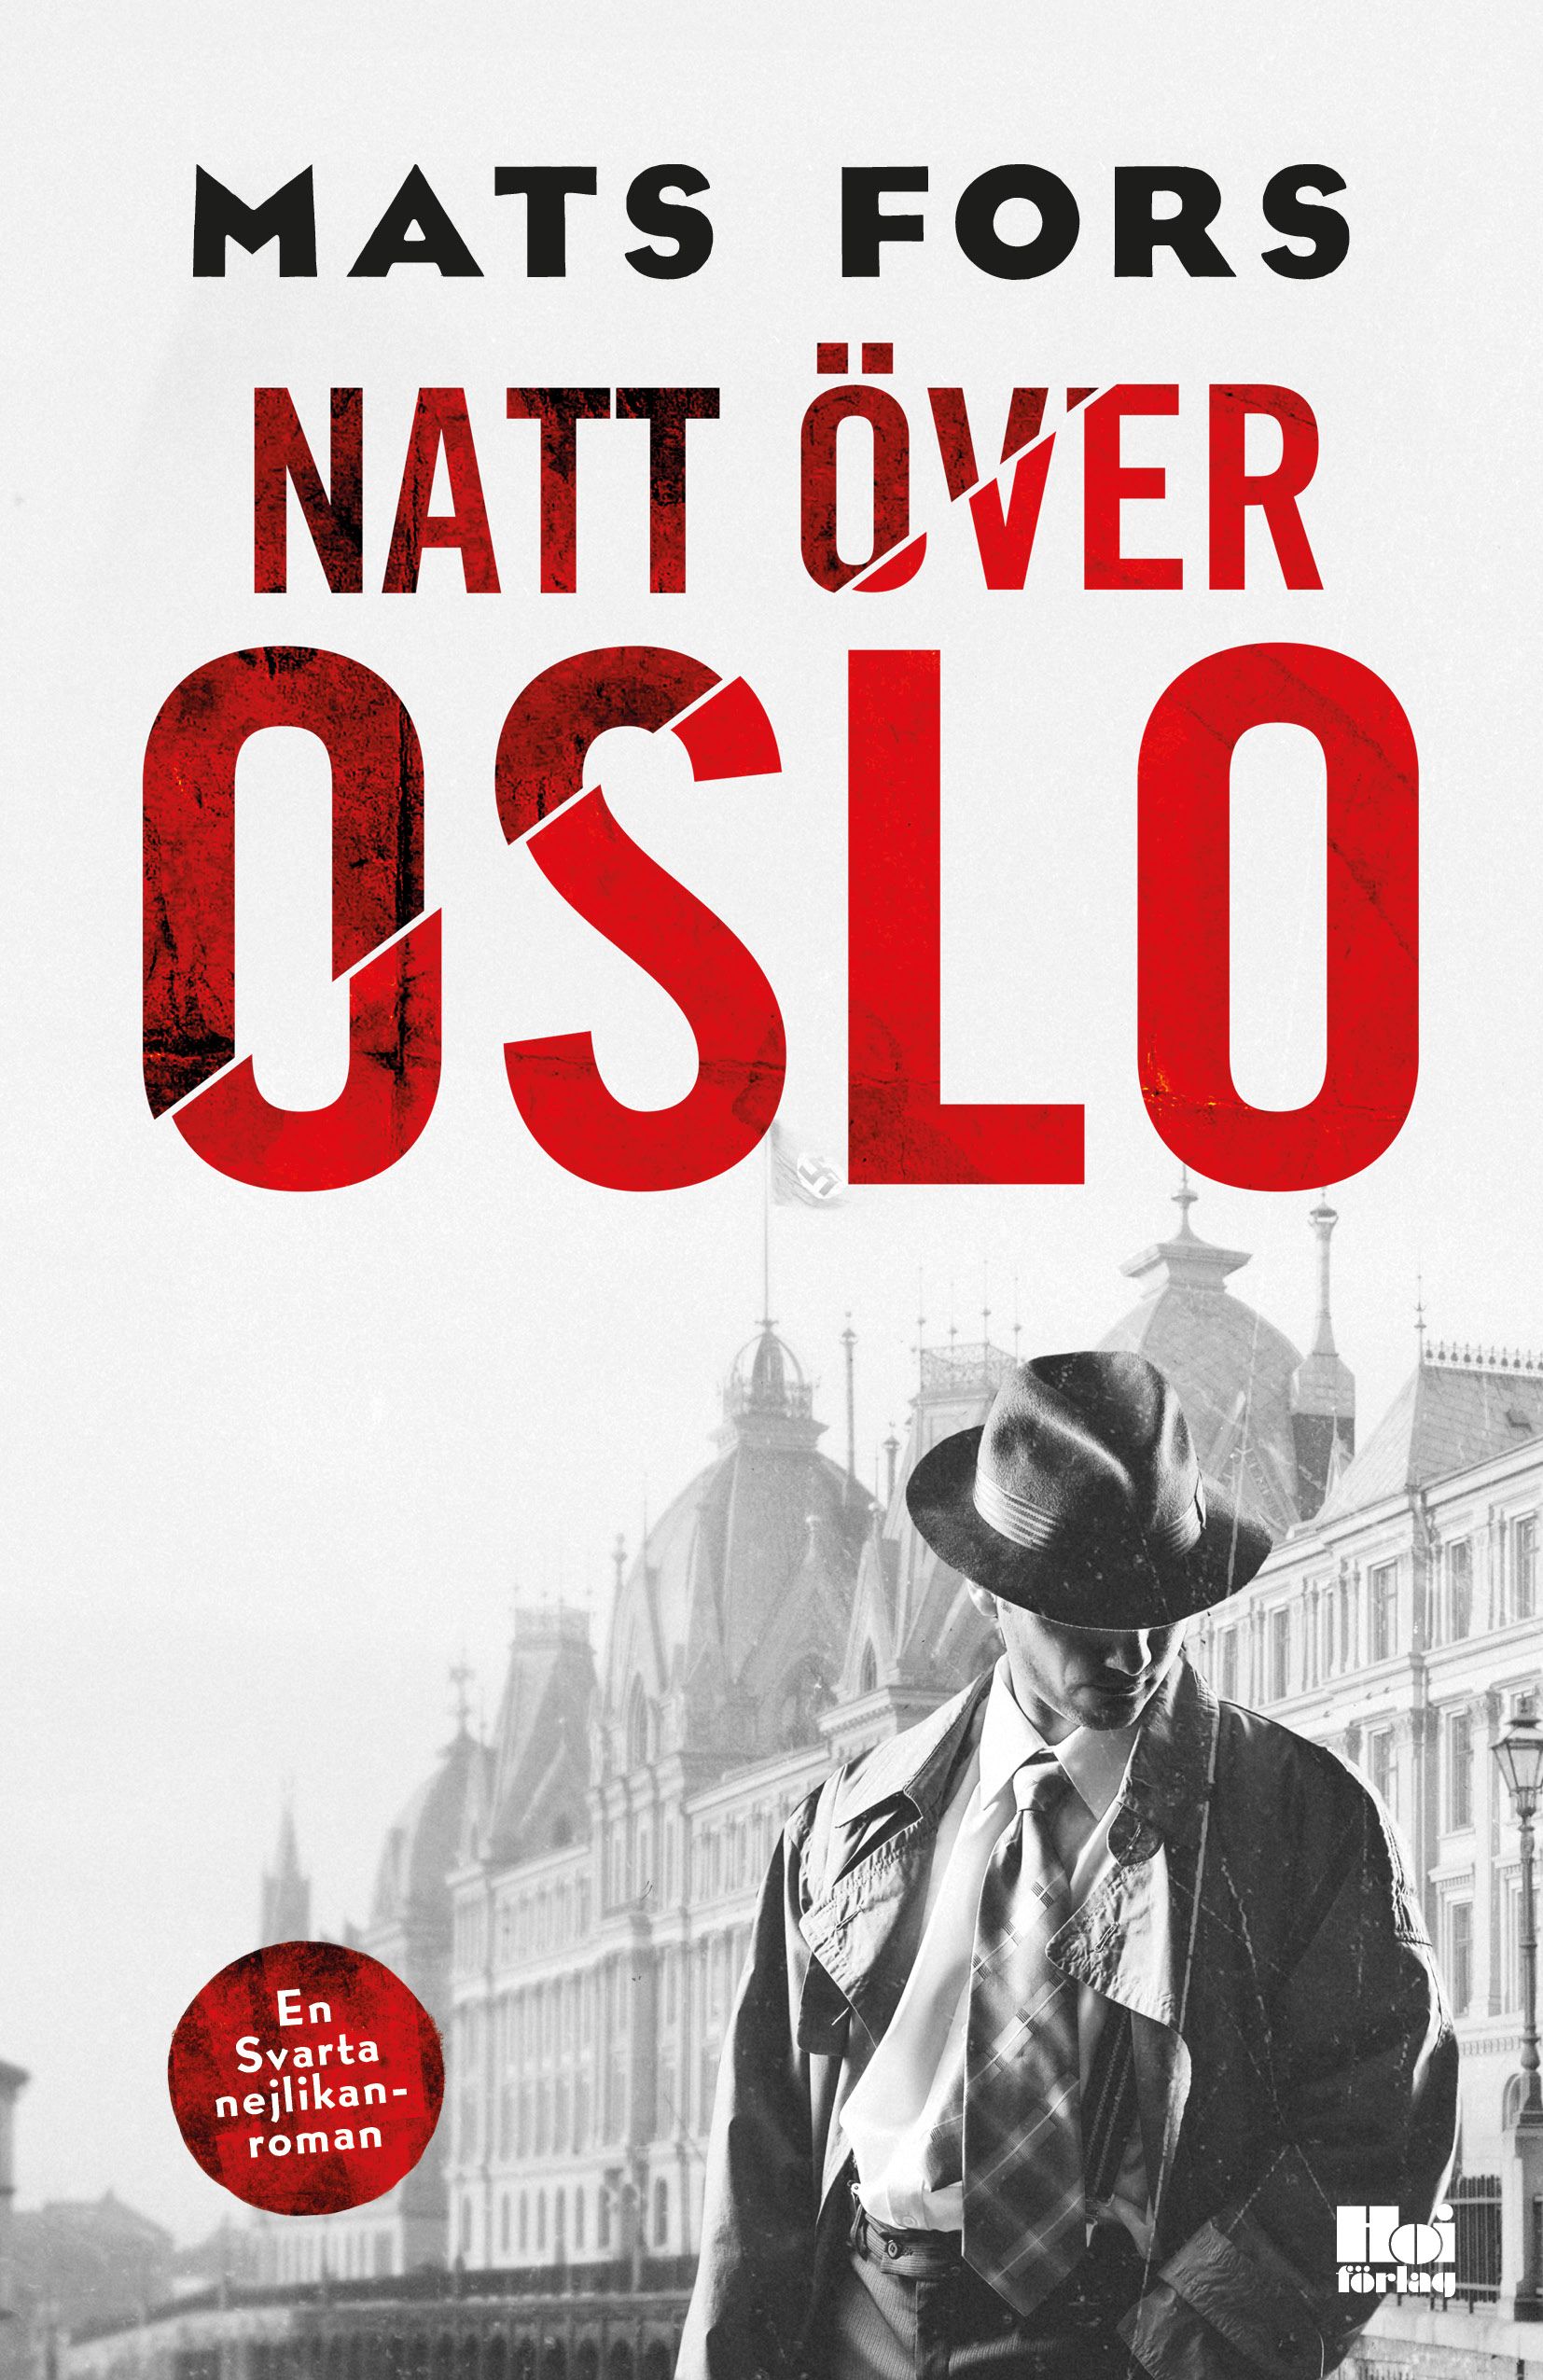 Natt över Oslo, e-bog af Mats Fors